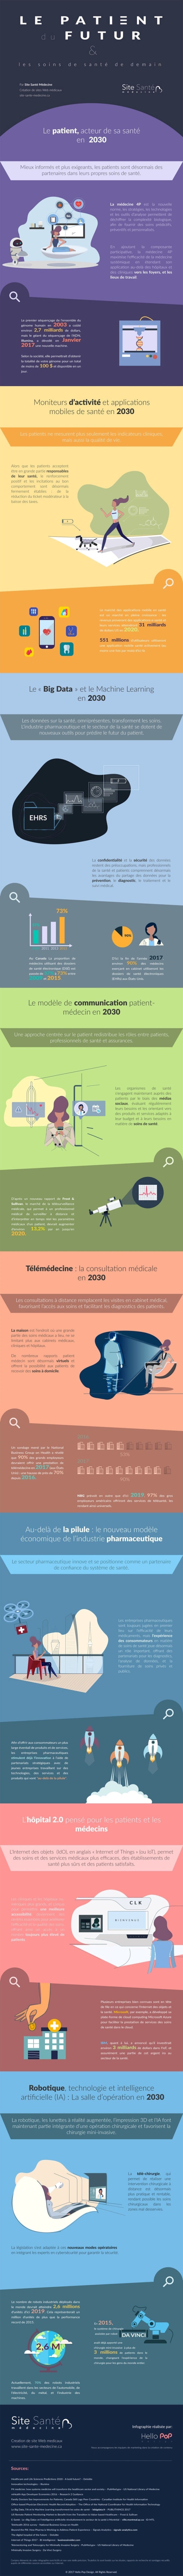 Infographie - Le patient du futur et les soins de santé de demain